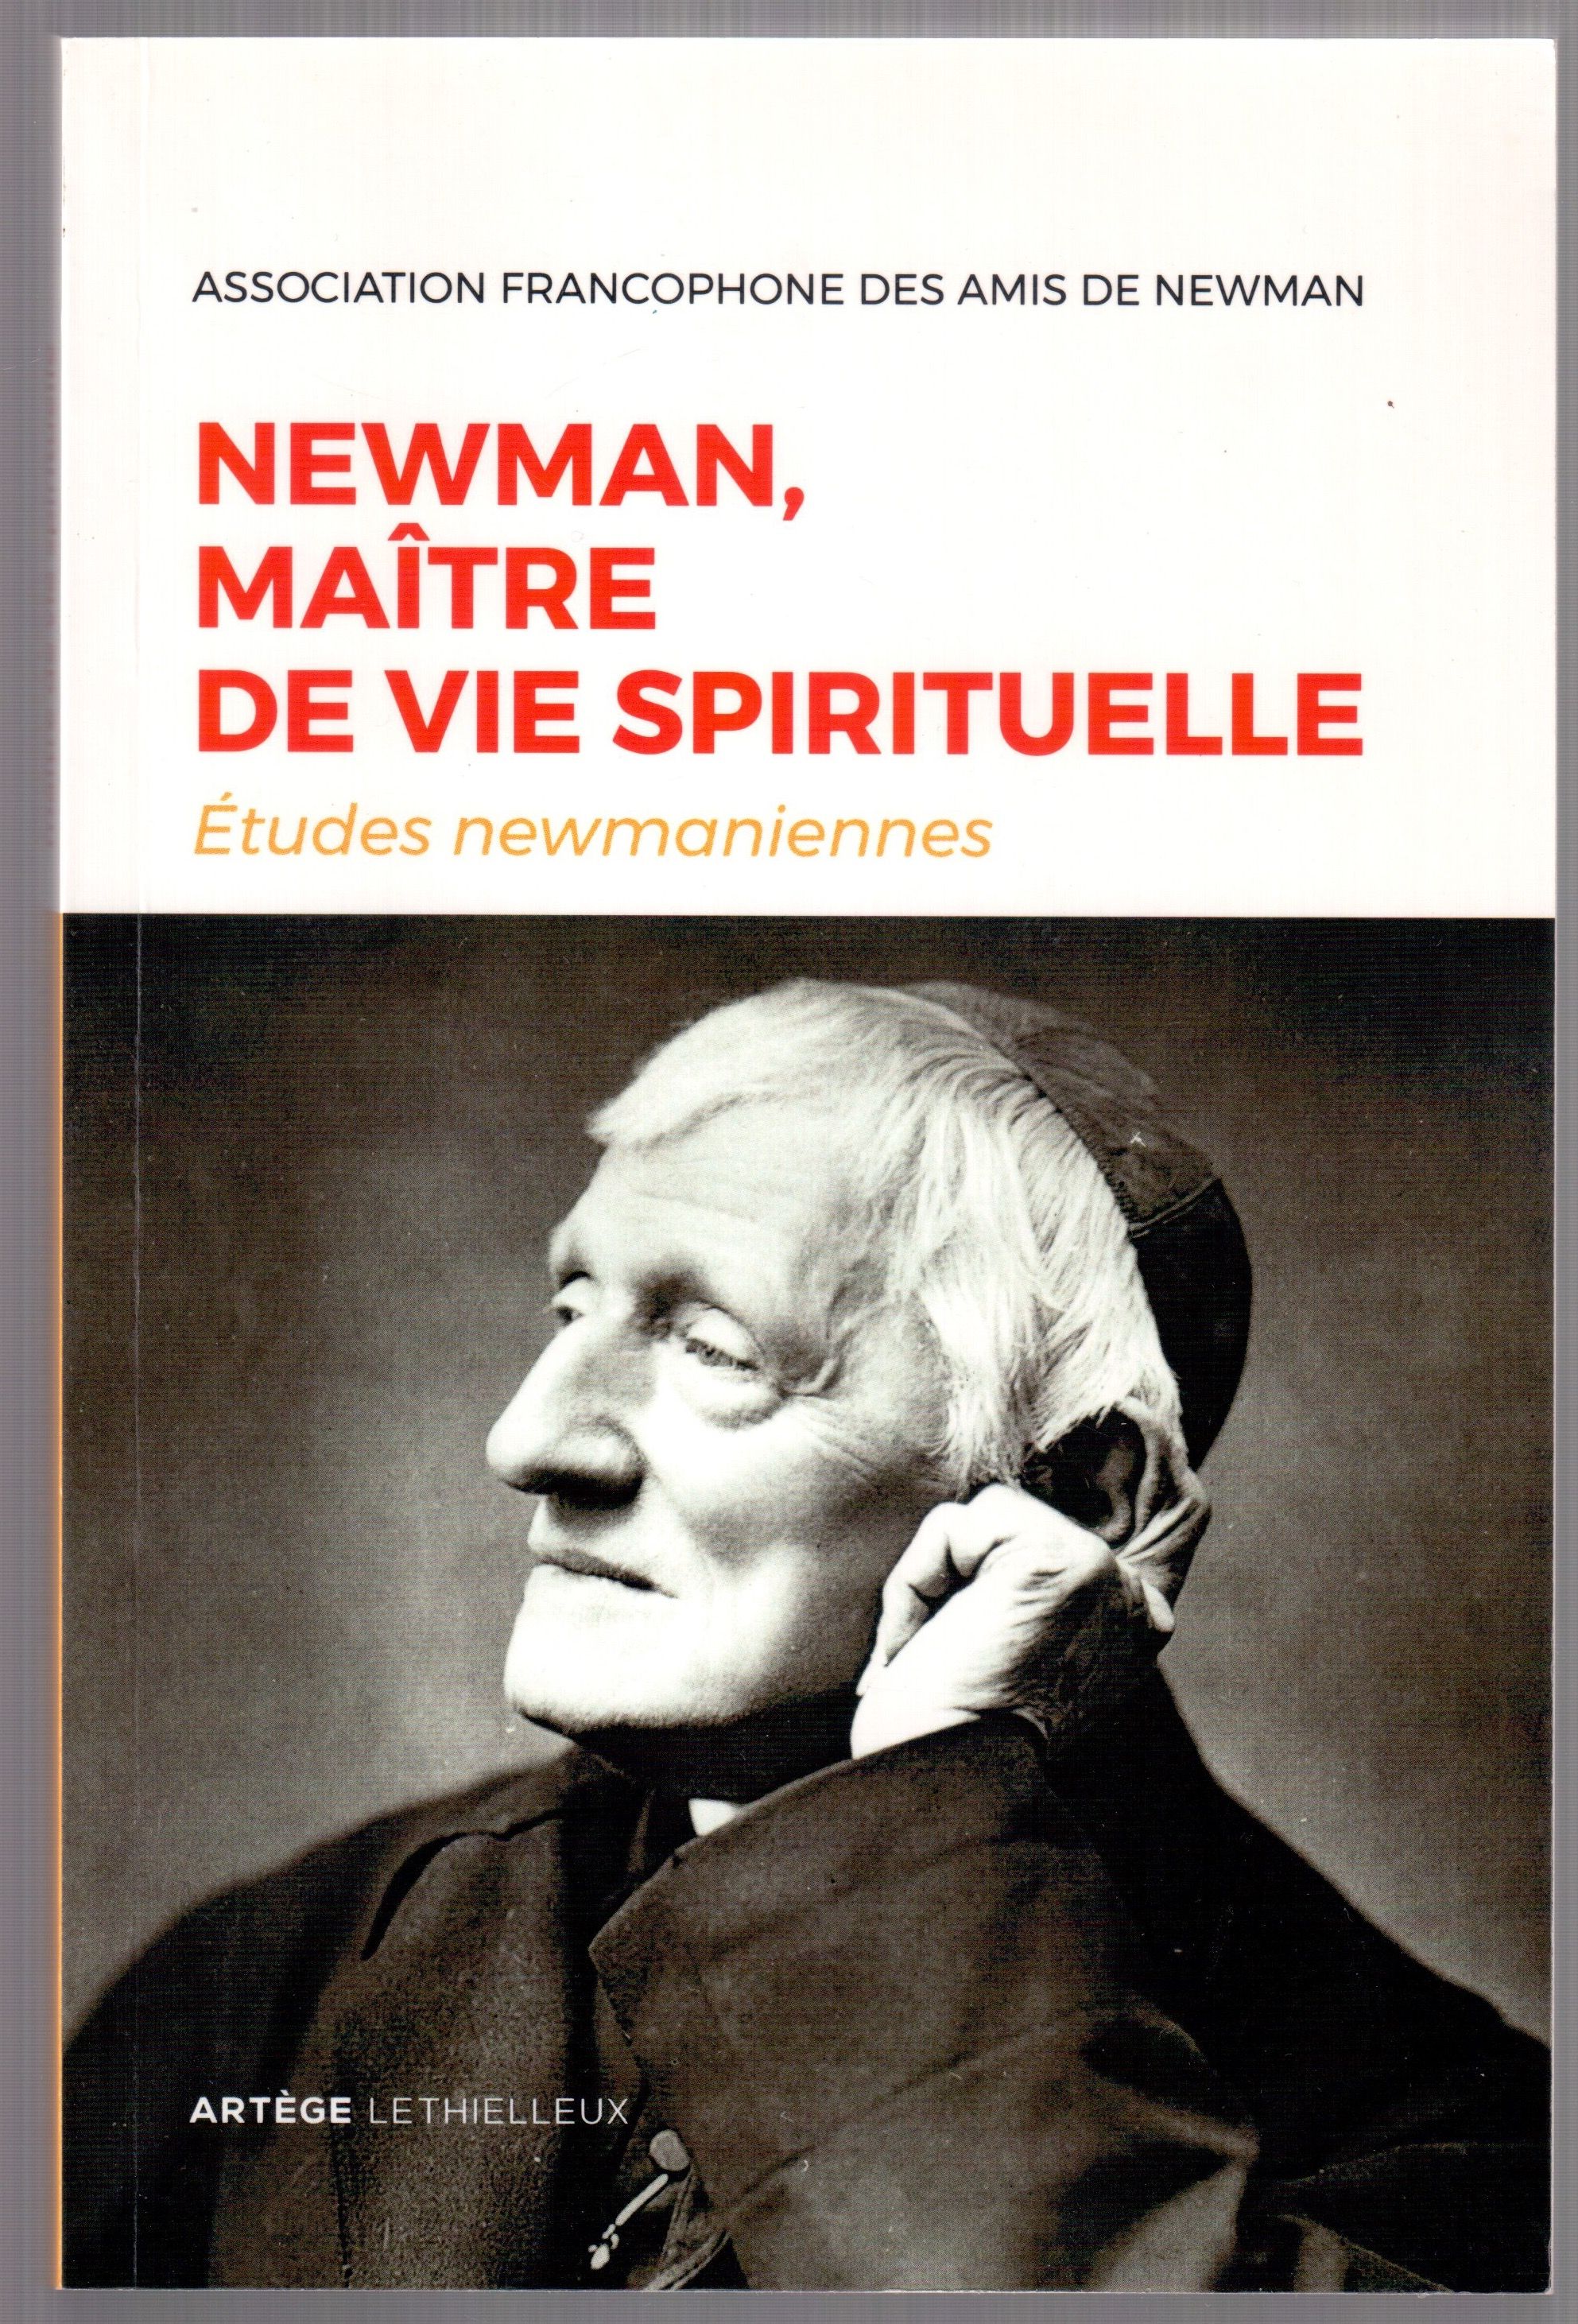 Etudes newmaniennes n°33, 2017 - Newman, maître de vie spirituelle - Association francophone des amis de Newman